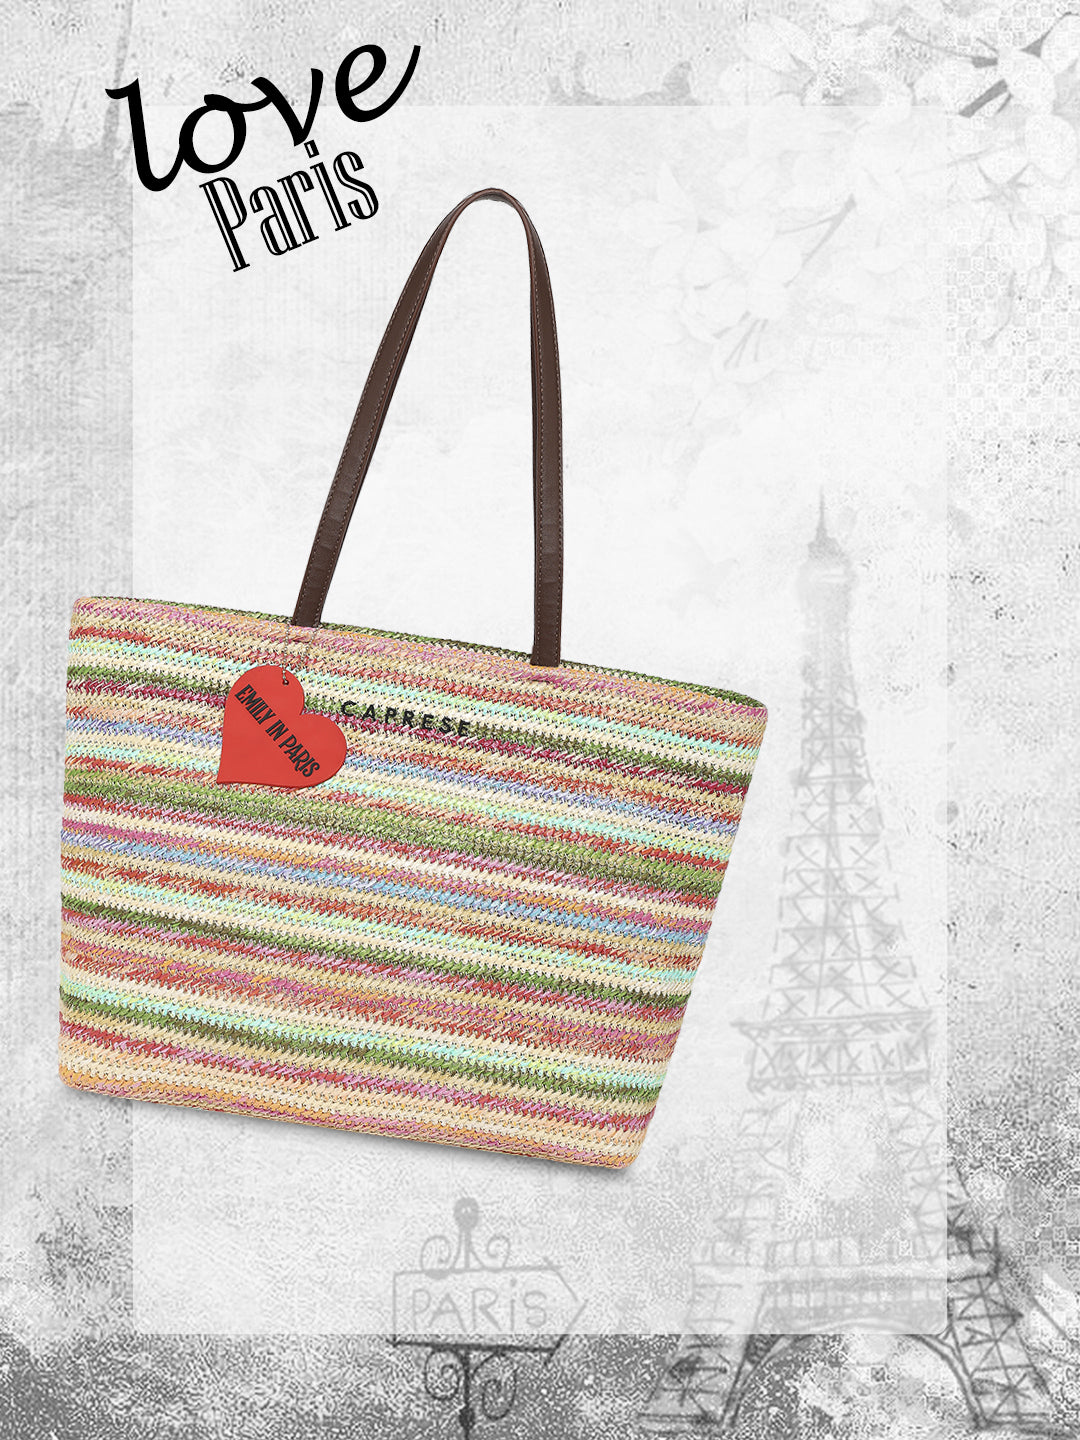 Caprese Emily in Paris Printed Tote Handbag